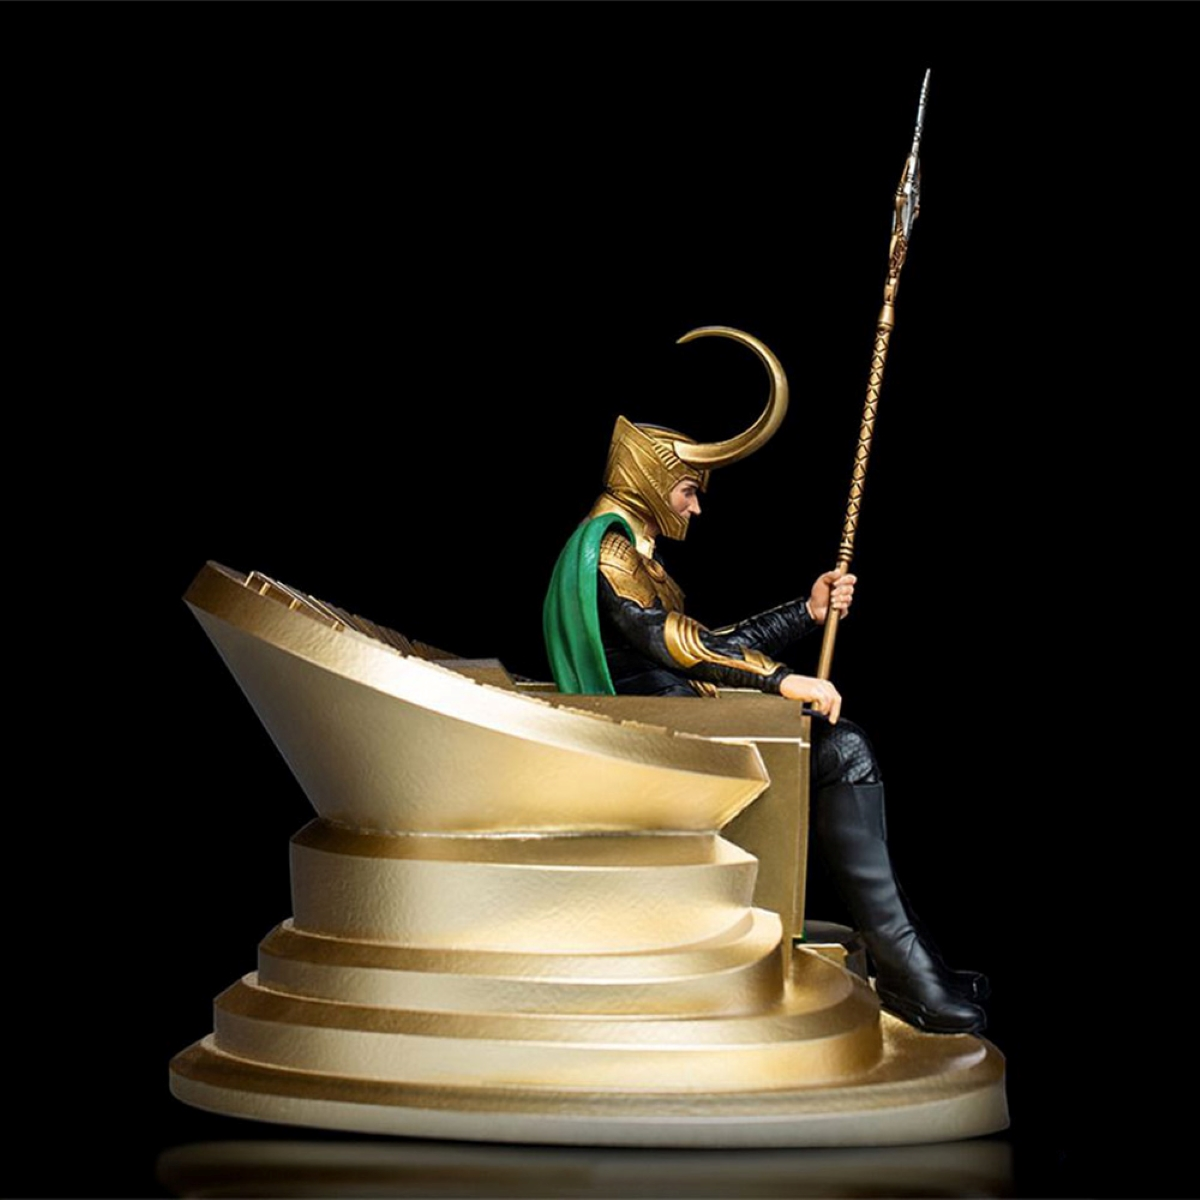 IRON STUDIOS The 1/10 Infinity Loki Statue - Sammelfigur Saga